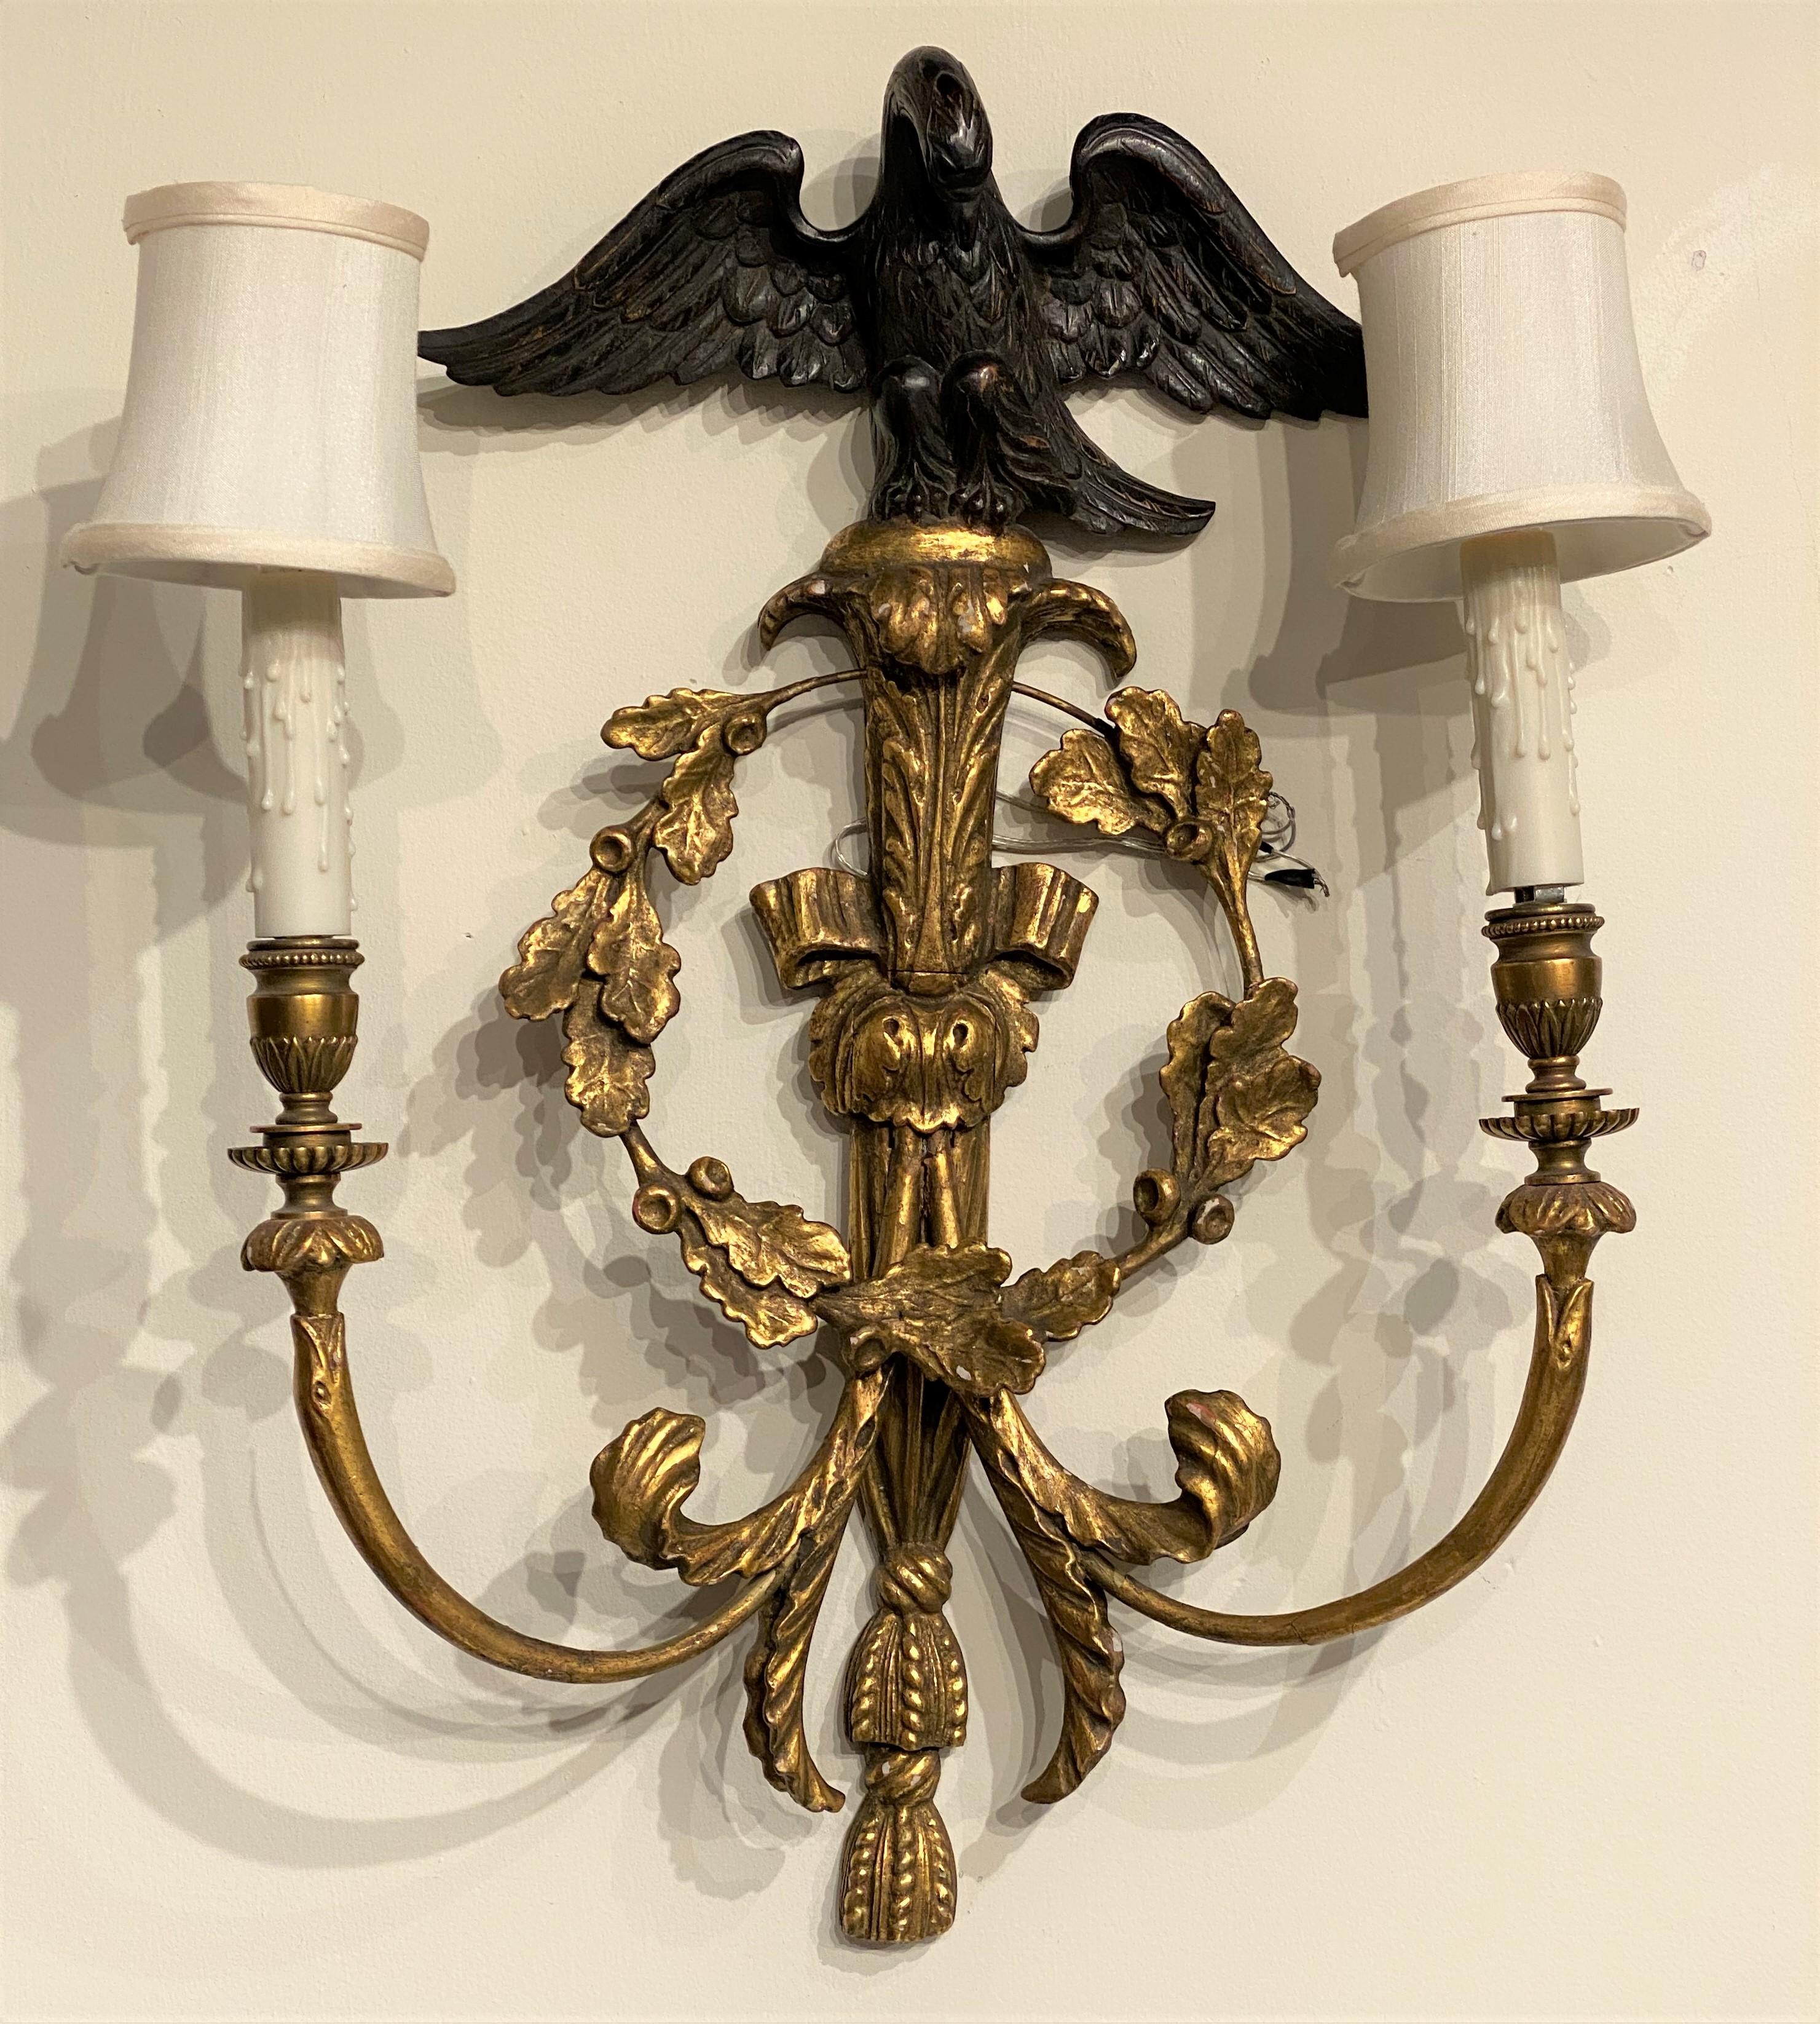 Ein feines Paar englischer Rokoko-Stil geschnitzt vergoldet Holz zwei-Licht-Wandleuchten mit Metall-Arme, ebonisiert Adler Tops und Kranz-Motiv. Das Paar stammt aus dem 20. Jahrhundert und ist in einem sehr guten Zustand, kürzlich neu verkabelt, mit